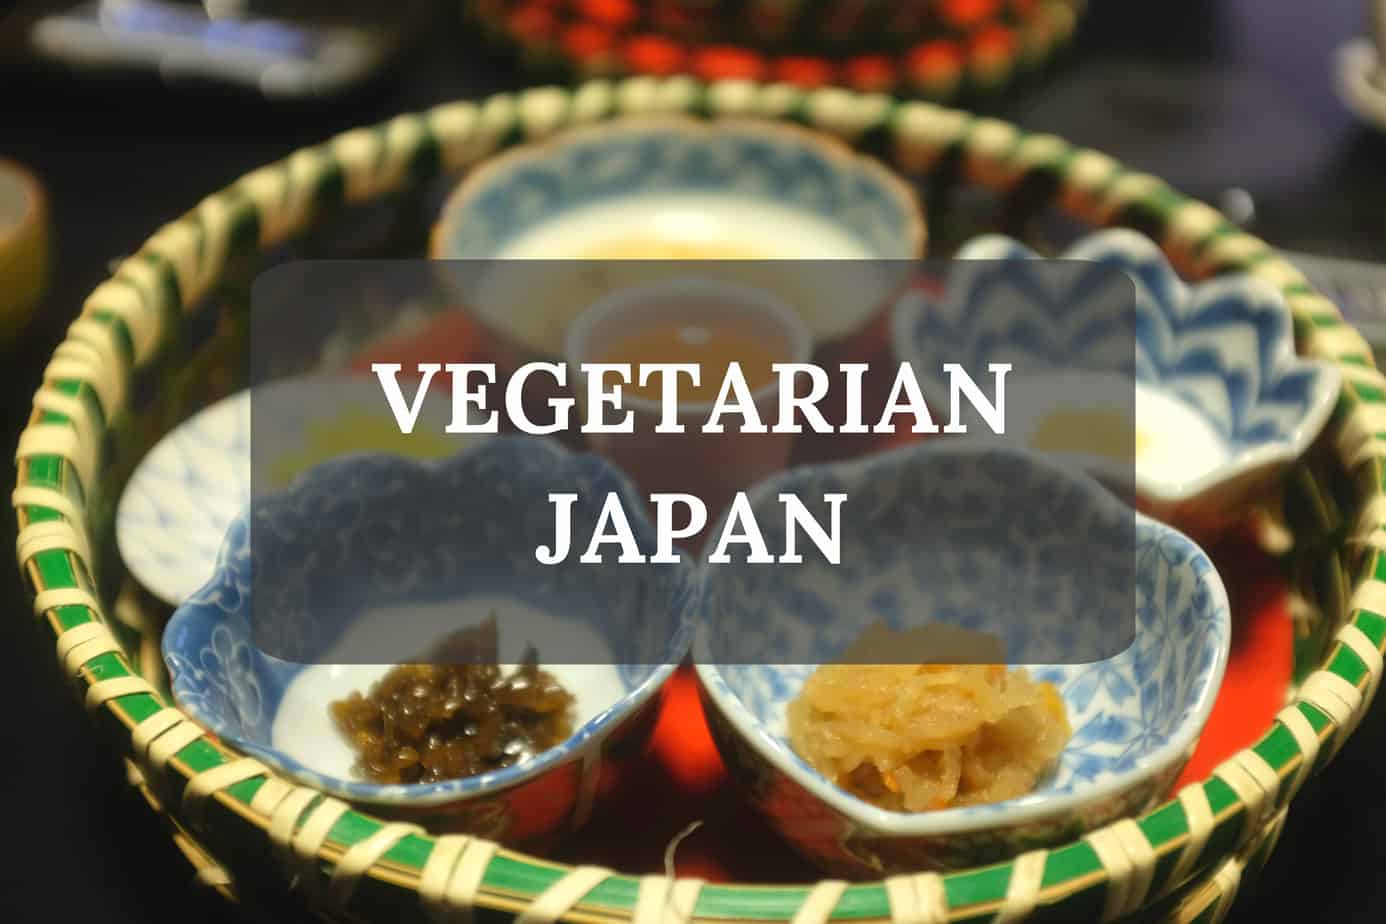 Guide to being vegetarian in Japan